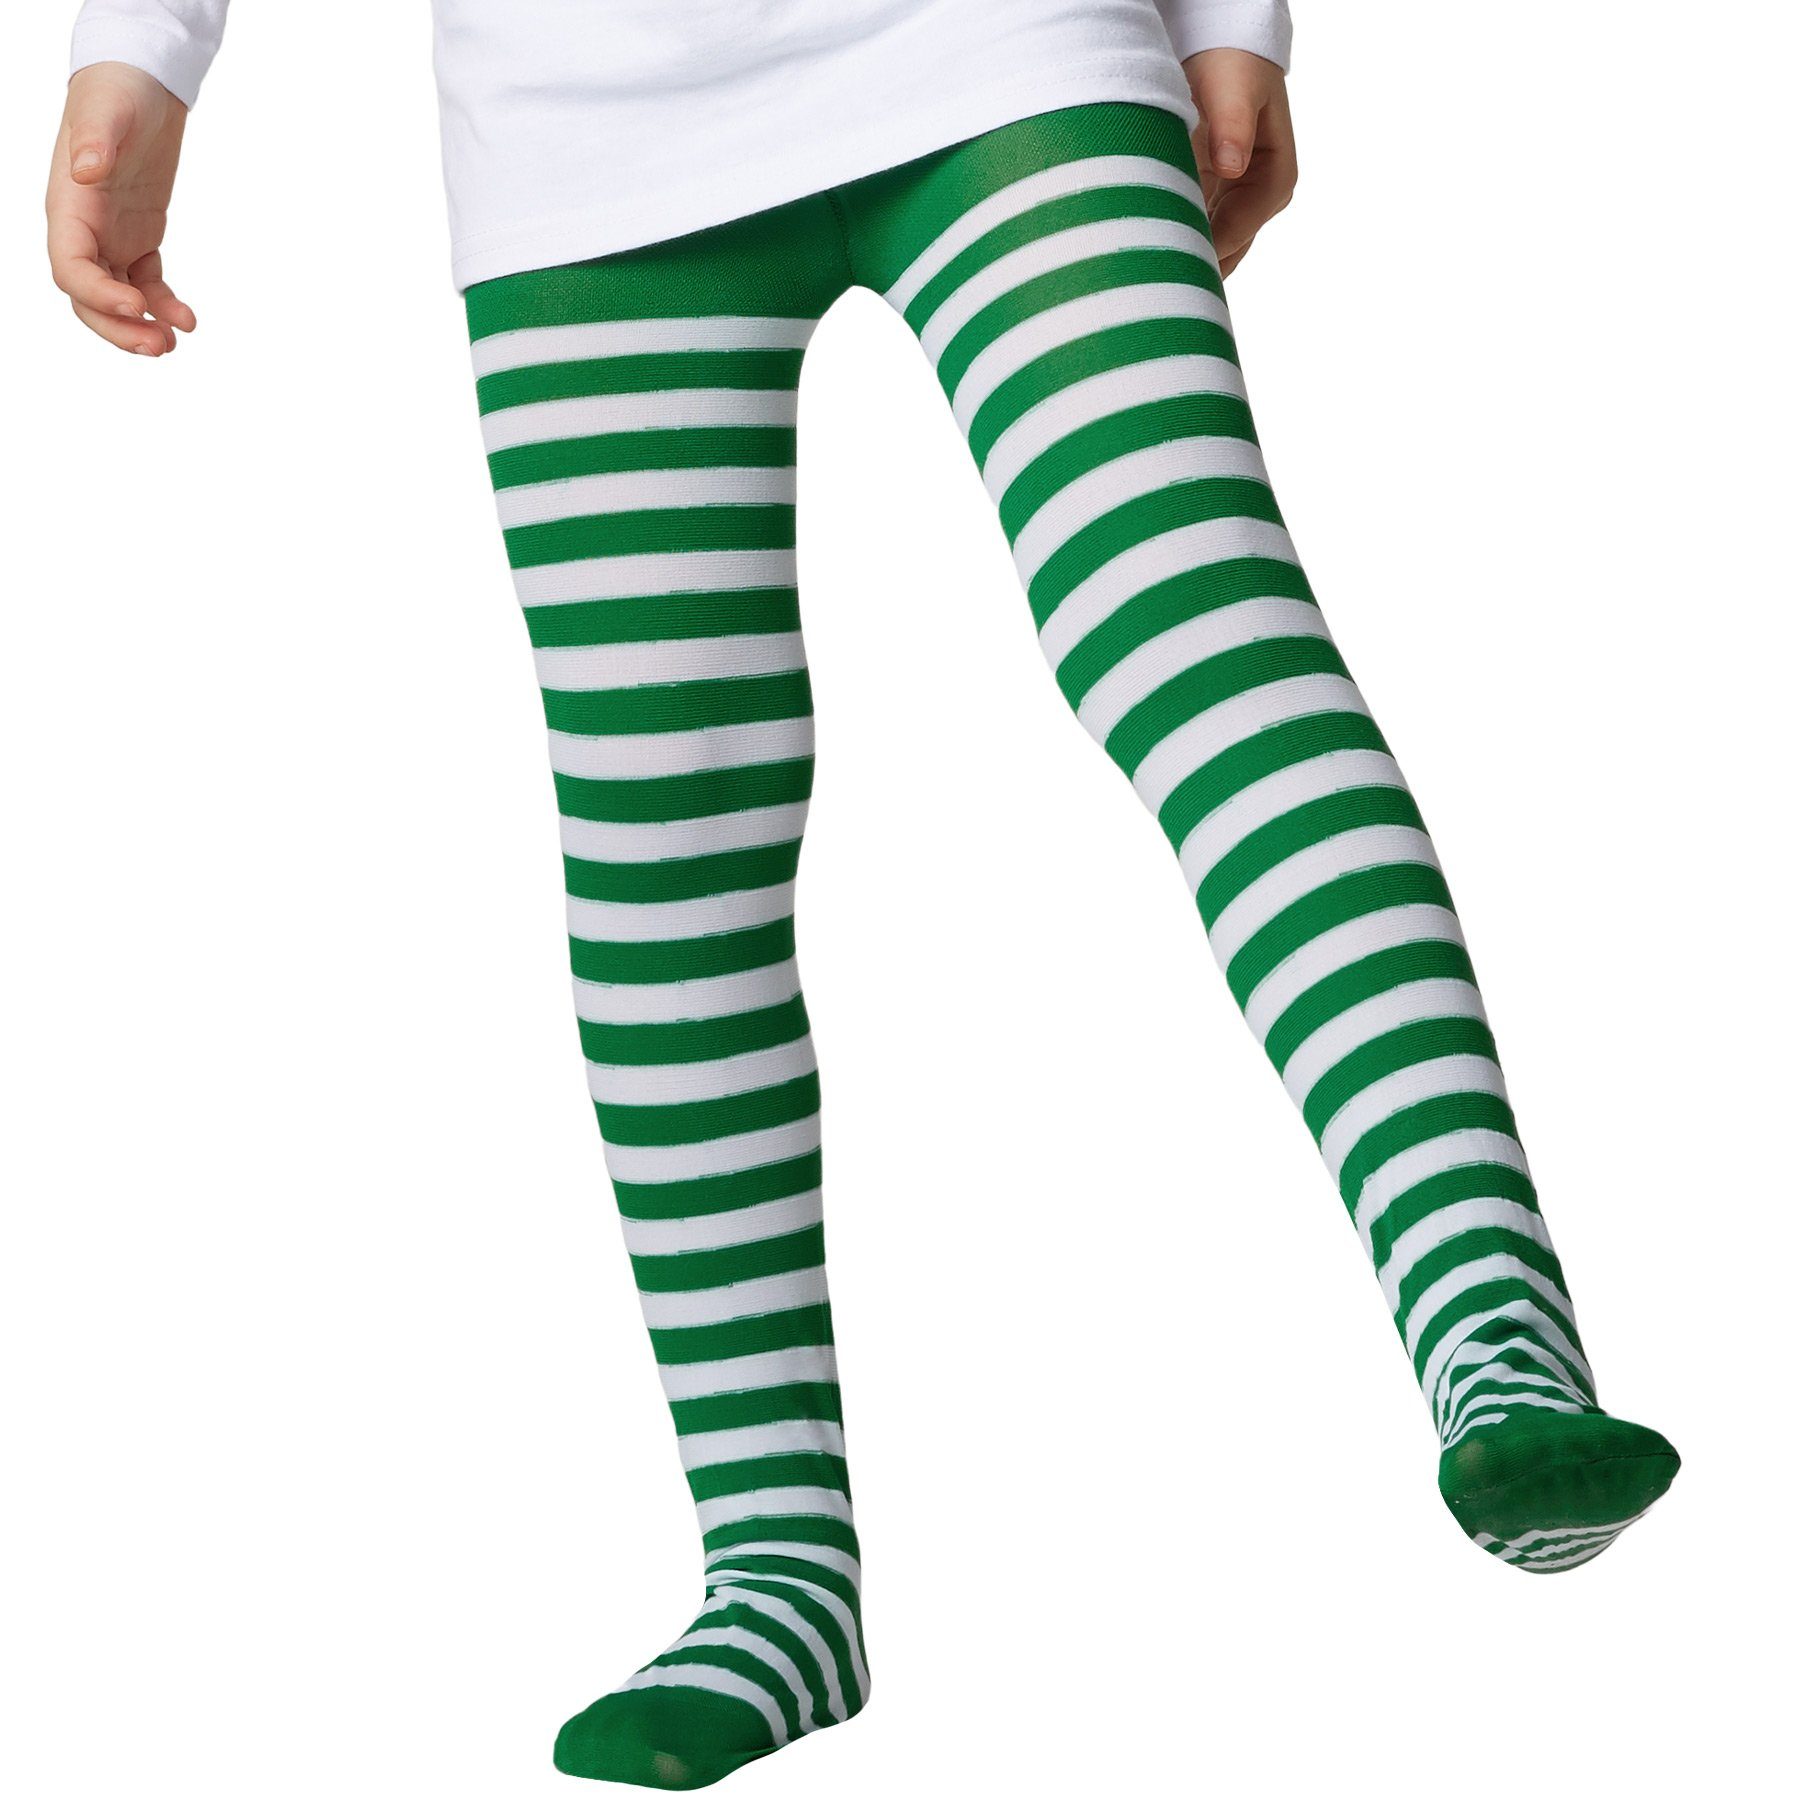 dressforfun Kostüm Gestreifte Strumpfhose für Korientalisch grün-weiß